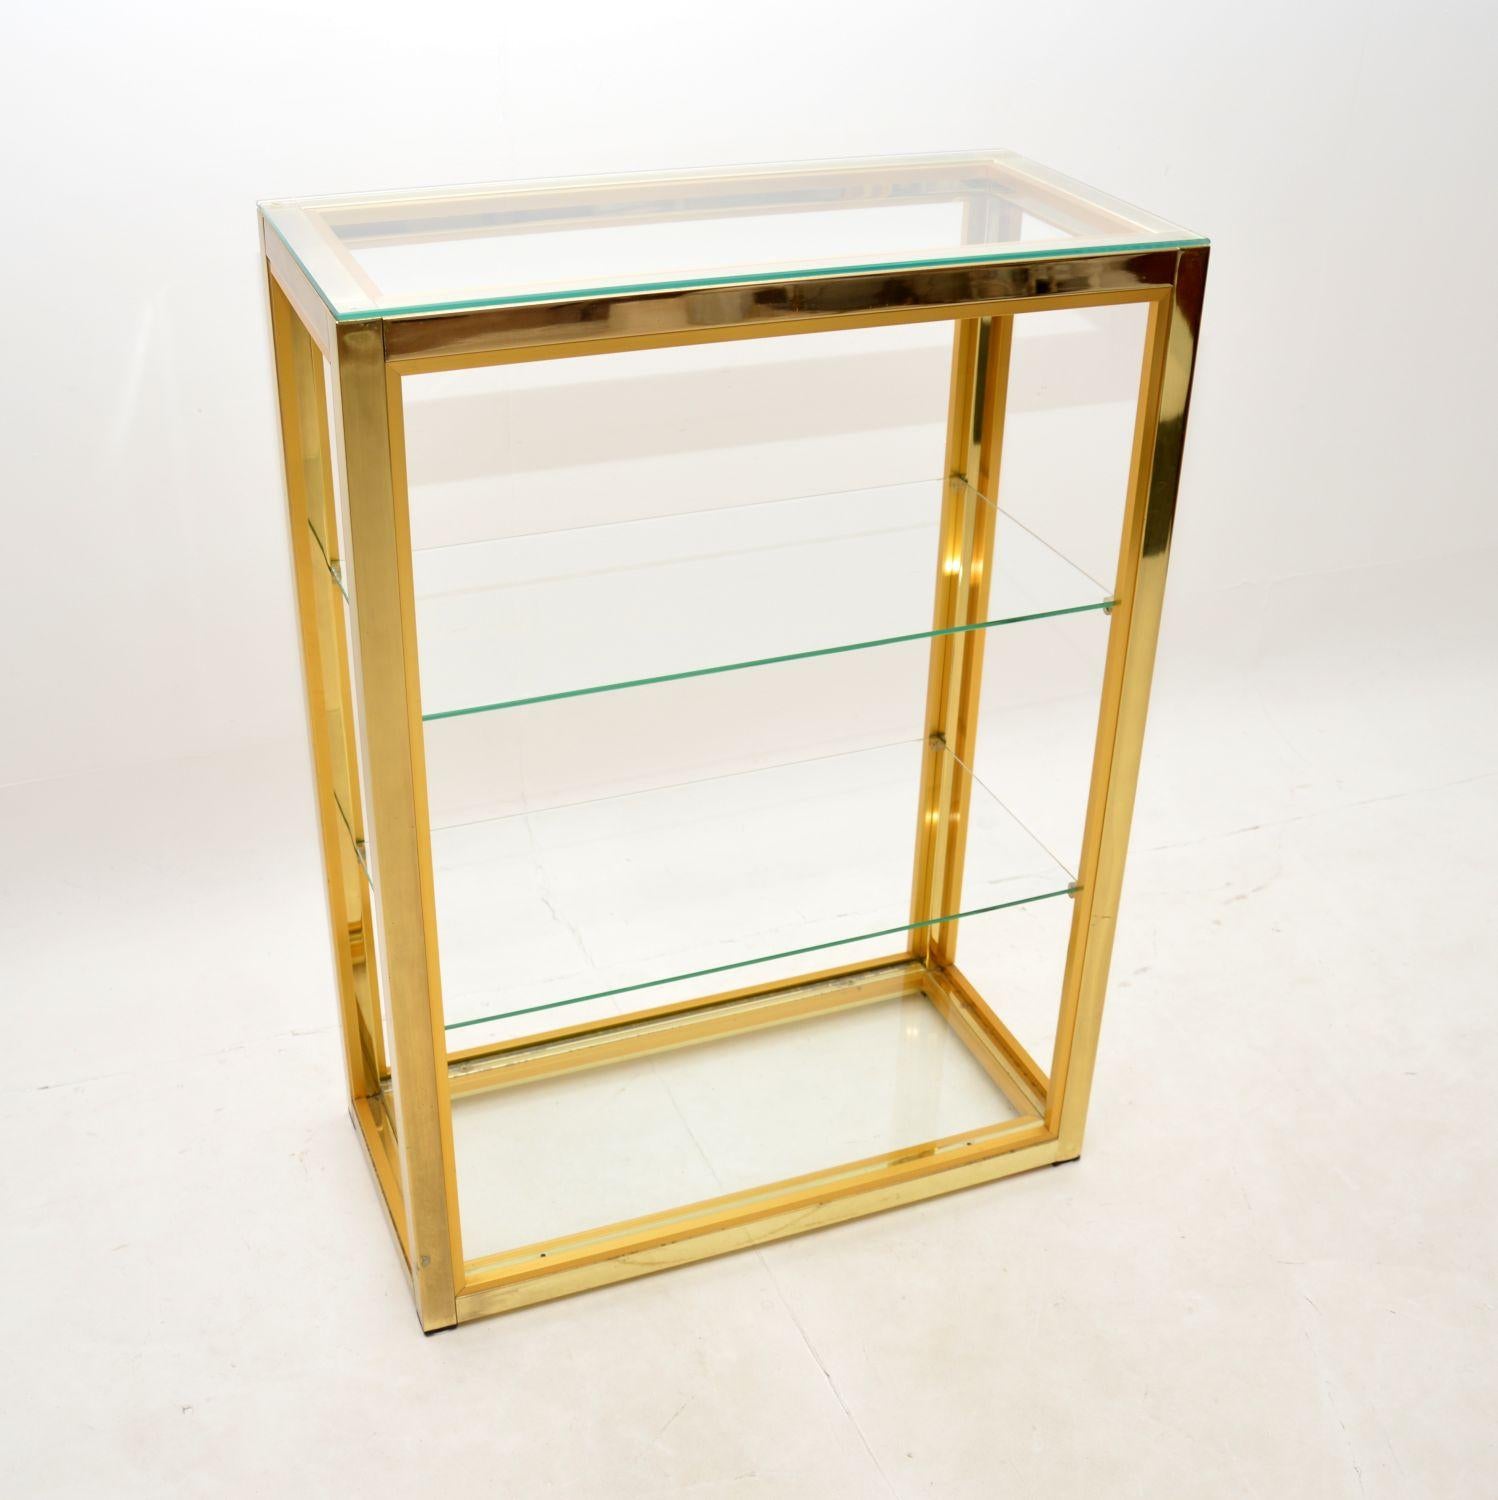 Une superbe vitrine italienne vintage de Zevi. Conçue par Renato Zevi, elle a été fabriquée en Italie dans les années 1970.

Il s'agit de la version la moins courante en finition entièrement dorée, c'est de l'aluminium plaqué laiton. La qualité est